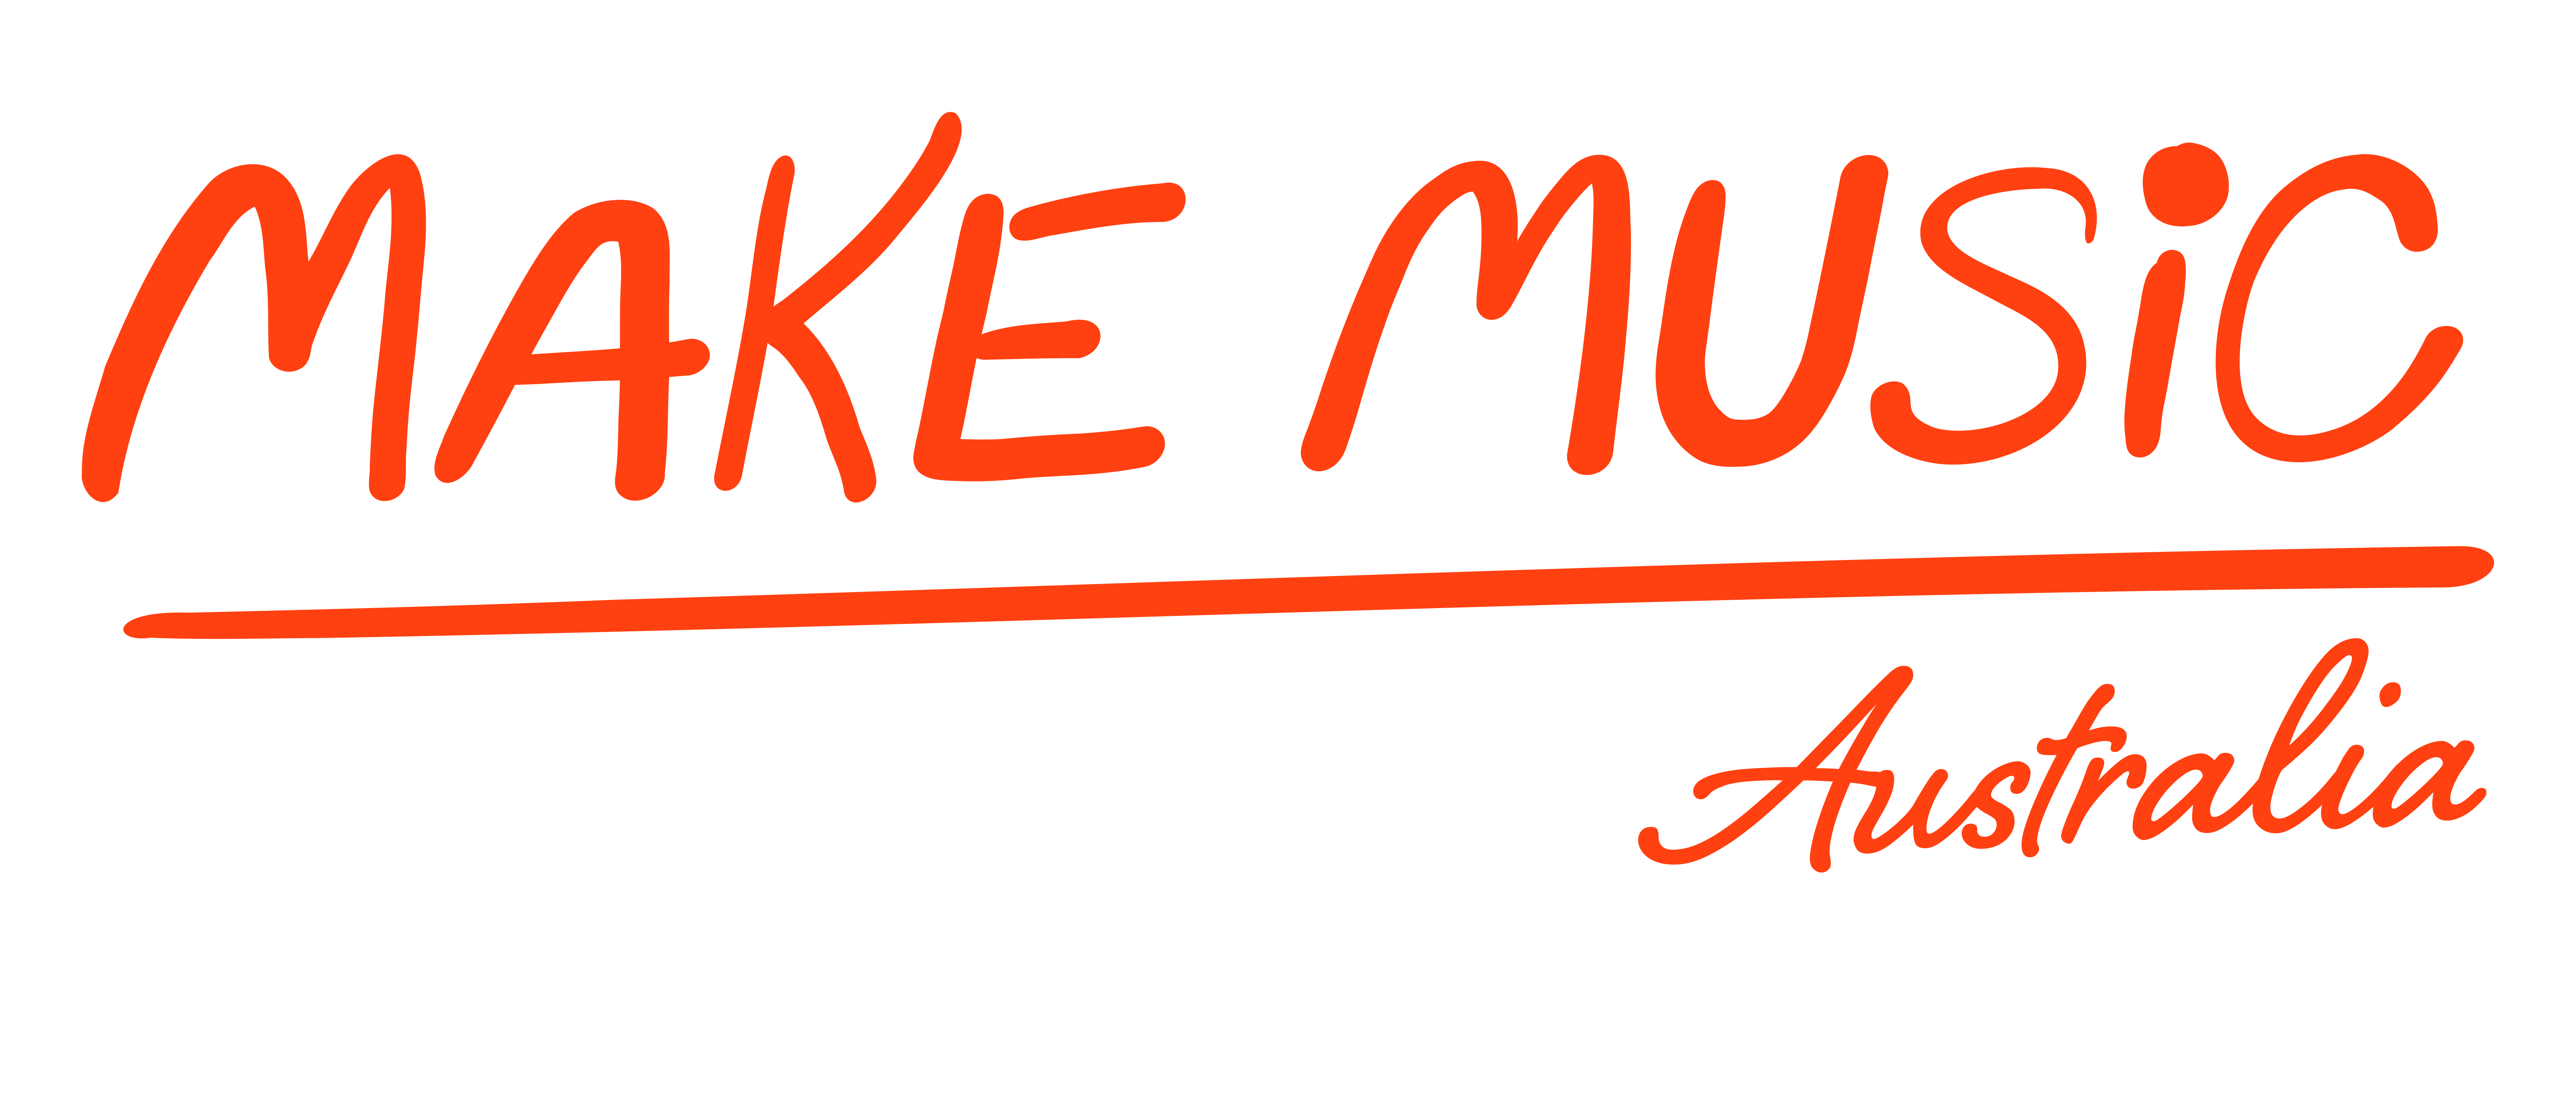 Make Music Day Australia